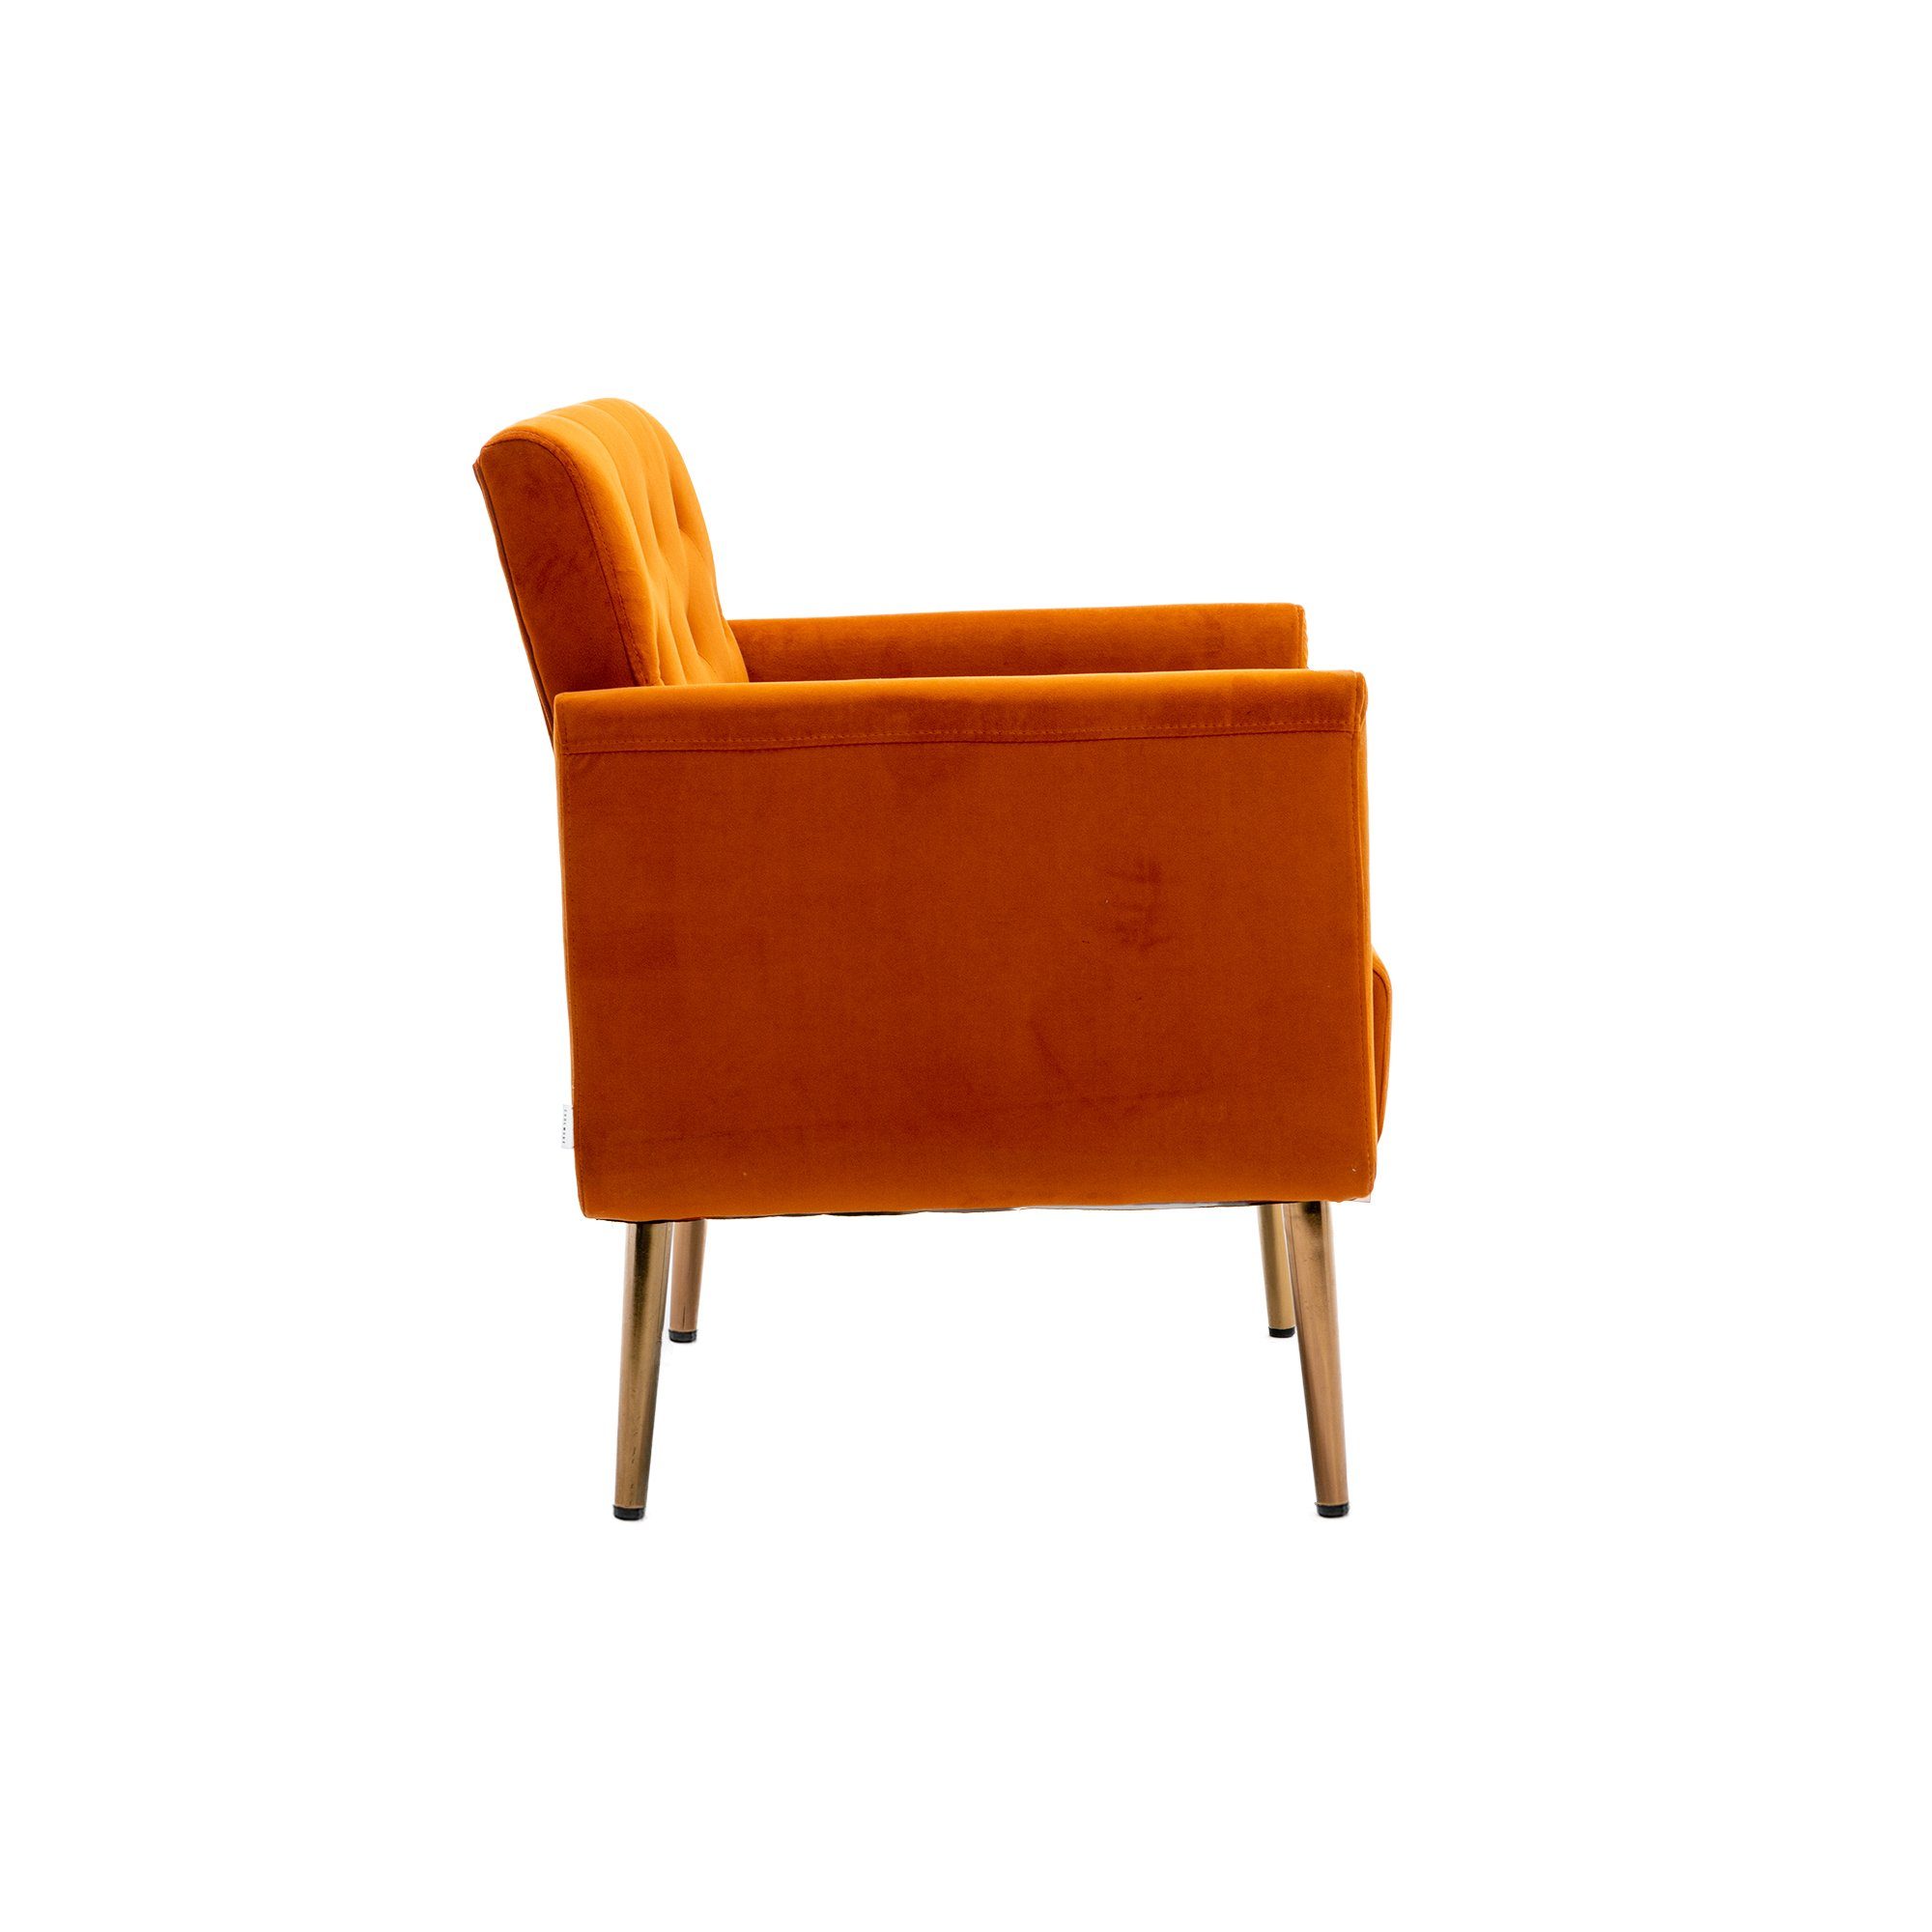 REDOM Esszimmerstuhl Freizeitsessel mit roségoldenen Füßen,Vierbeiniger Akzentstuhl Stuhl, orange